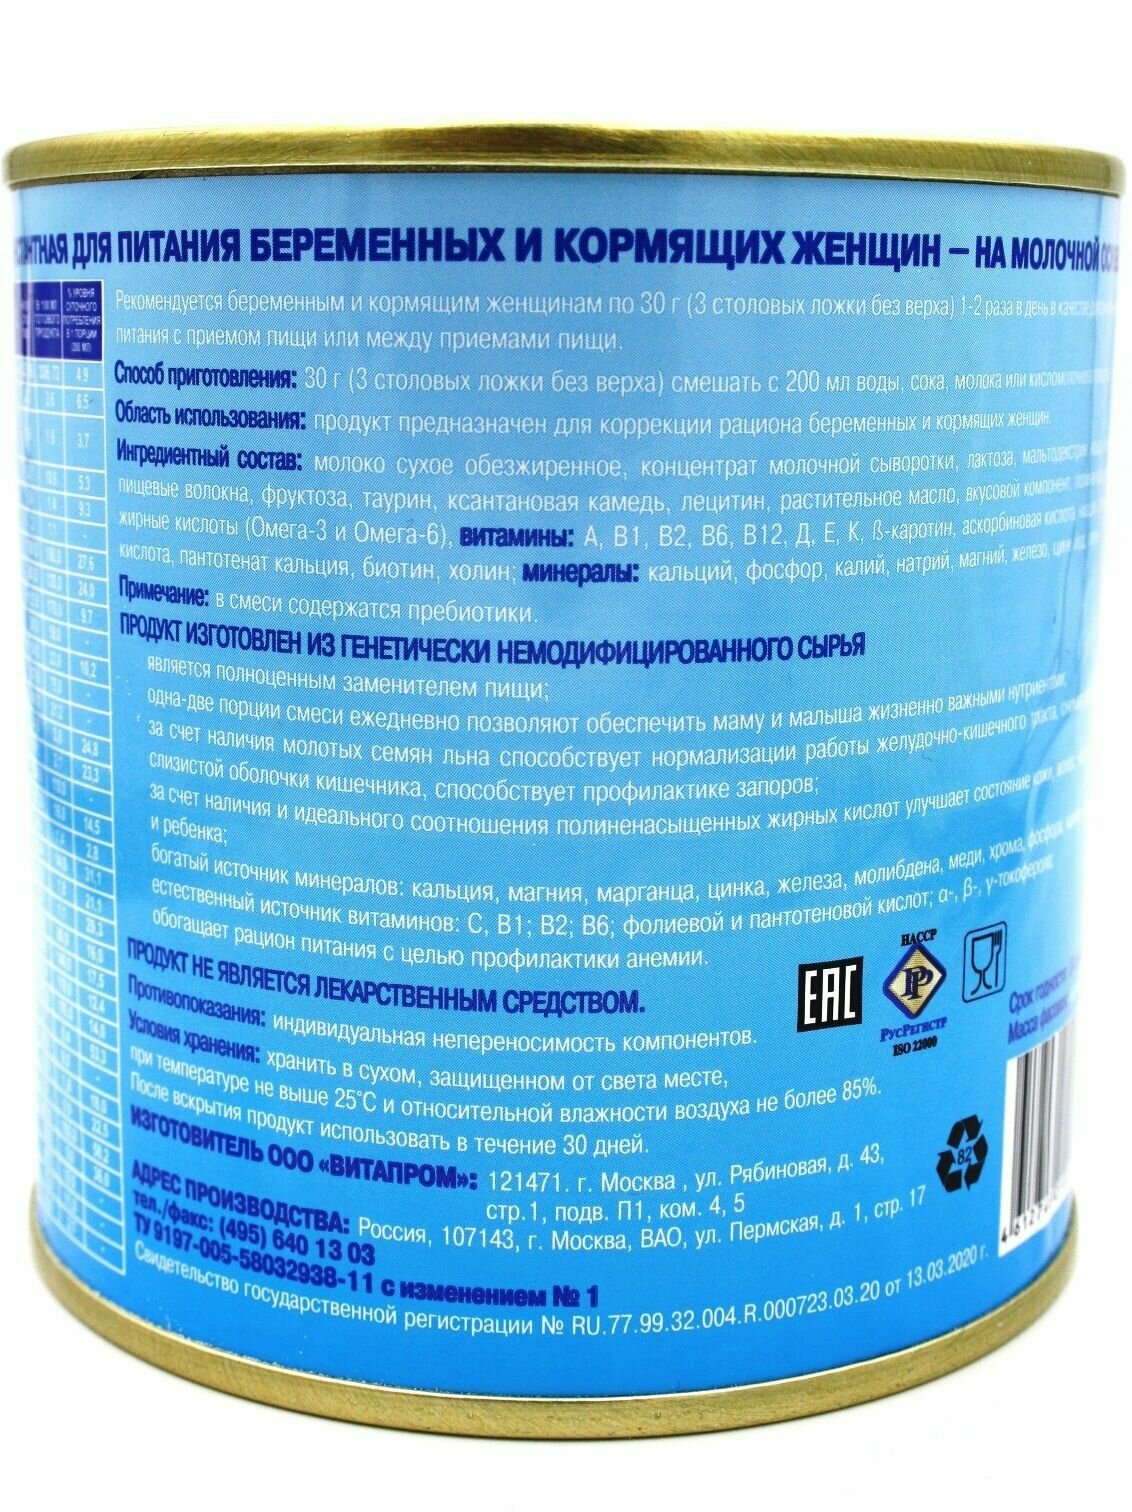 Смесь Витапром Юнона сухая для беременных и кормящих женщин 400 г ООО "Витапром" RU - фото №10